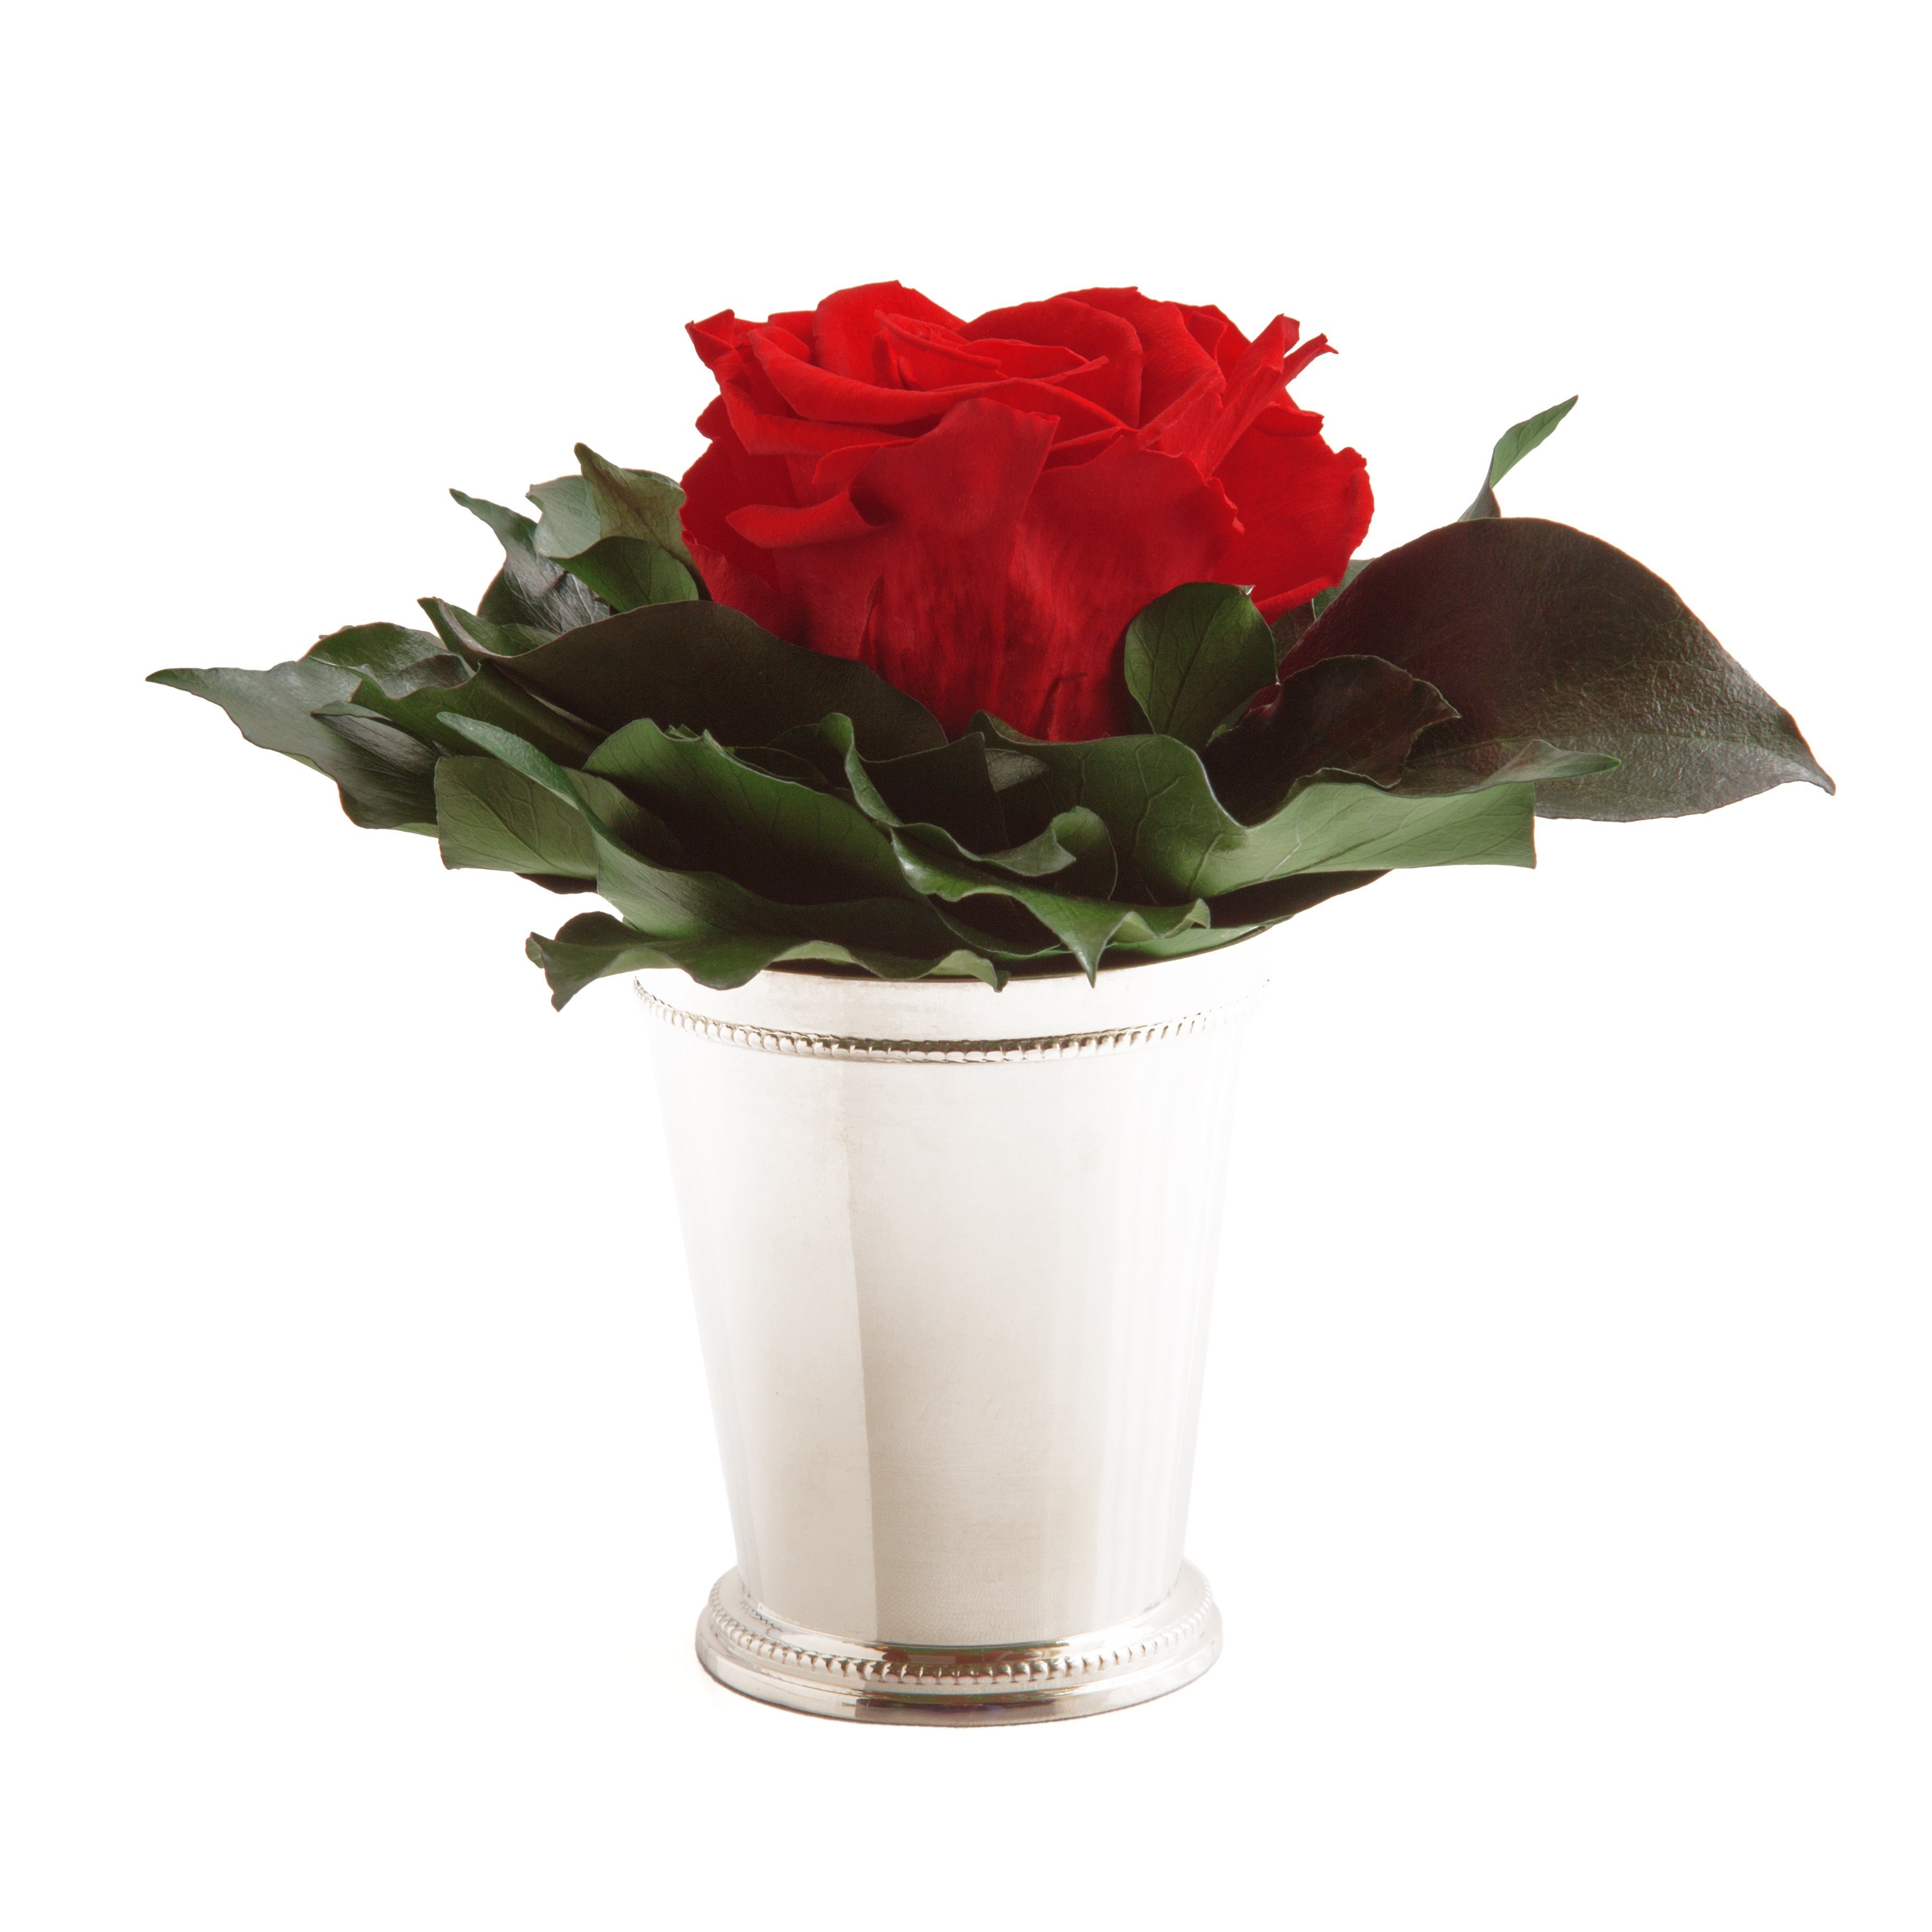 Künstliche Zimmerpflanze 1 Infinity Blume Becher silberfarben Geschenkidee für Frauen Rose, ROSEMARIE SCHULZ Heidelberg, Höhe 12 cm, Echte Rose lange haltbar Rot